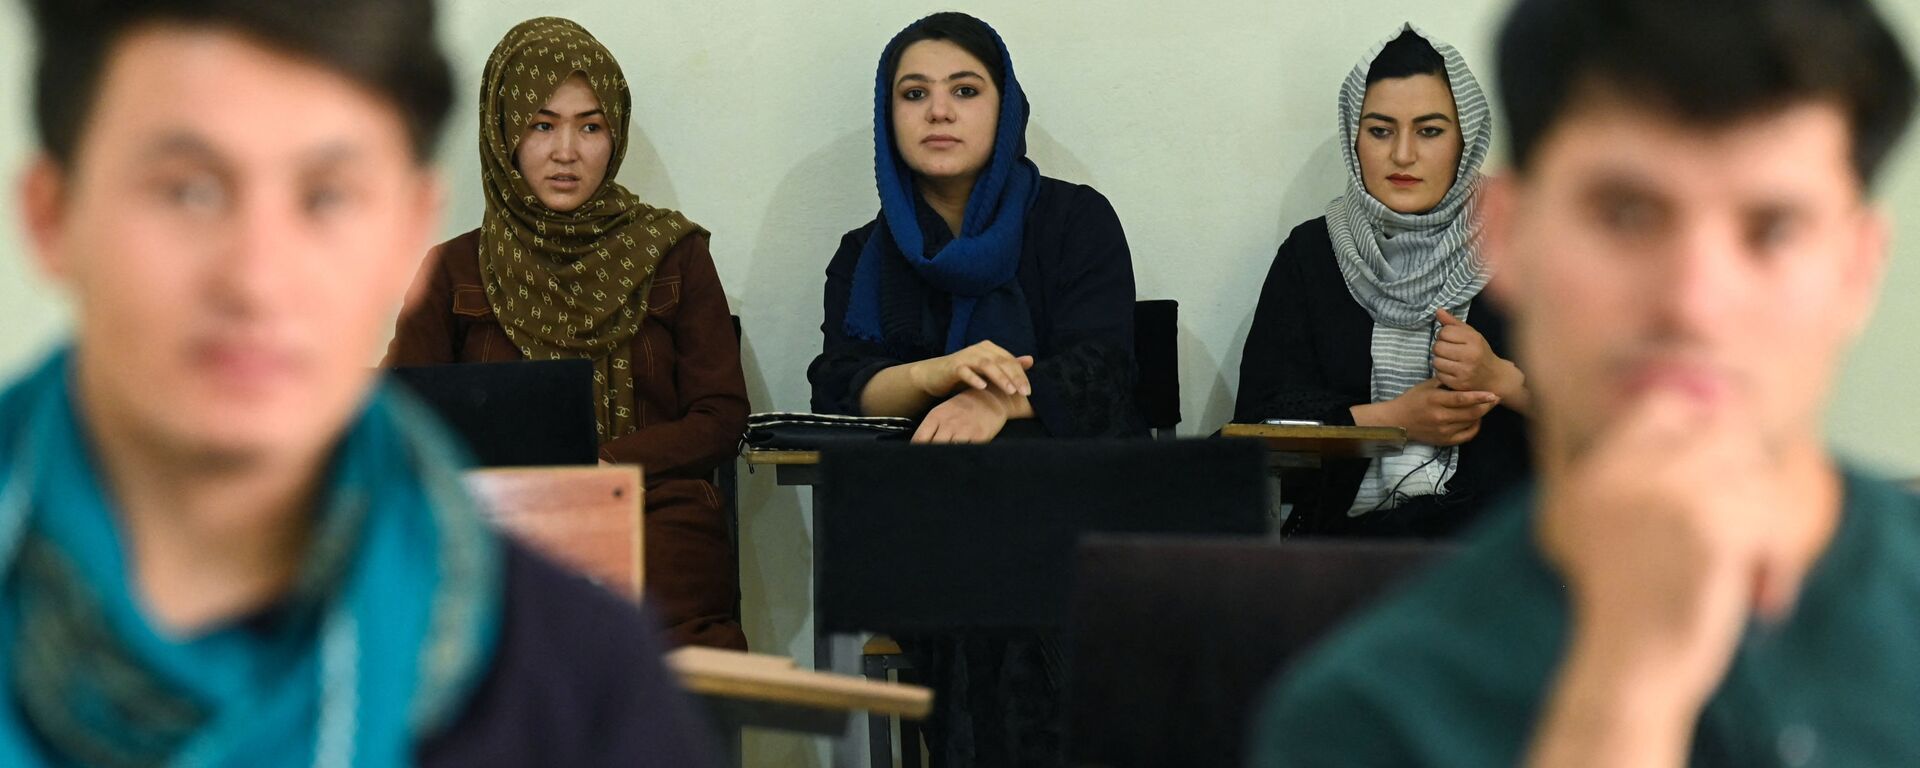 Студенты во время урока в университете в Кабуле  - Sputnik Тоҷикистон, 1920, 17.11.2021